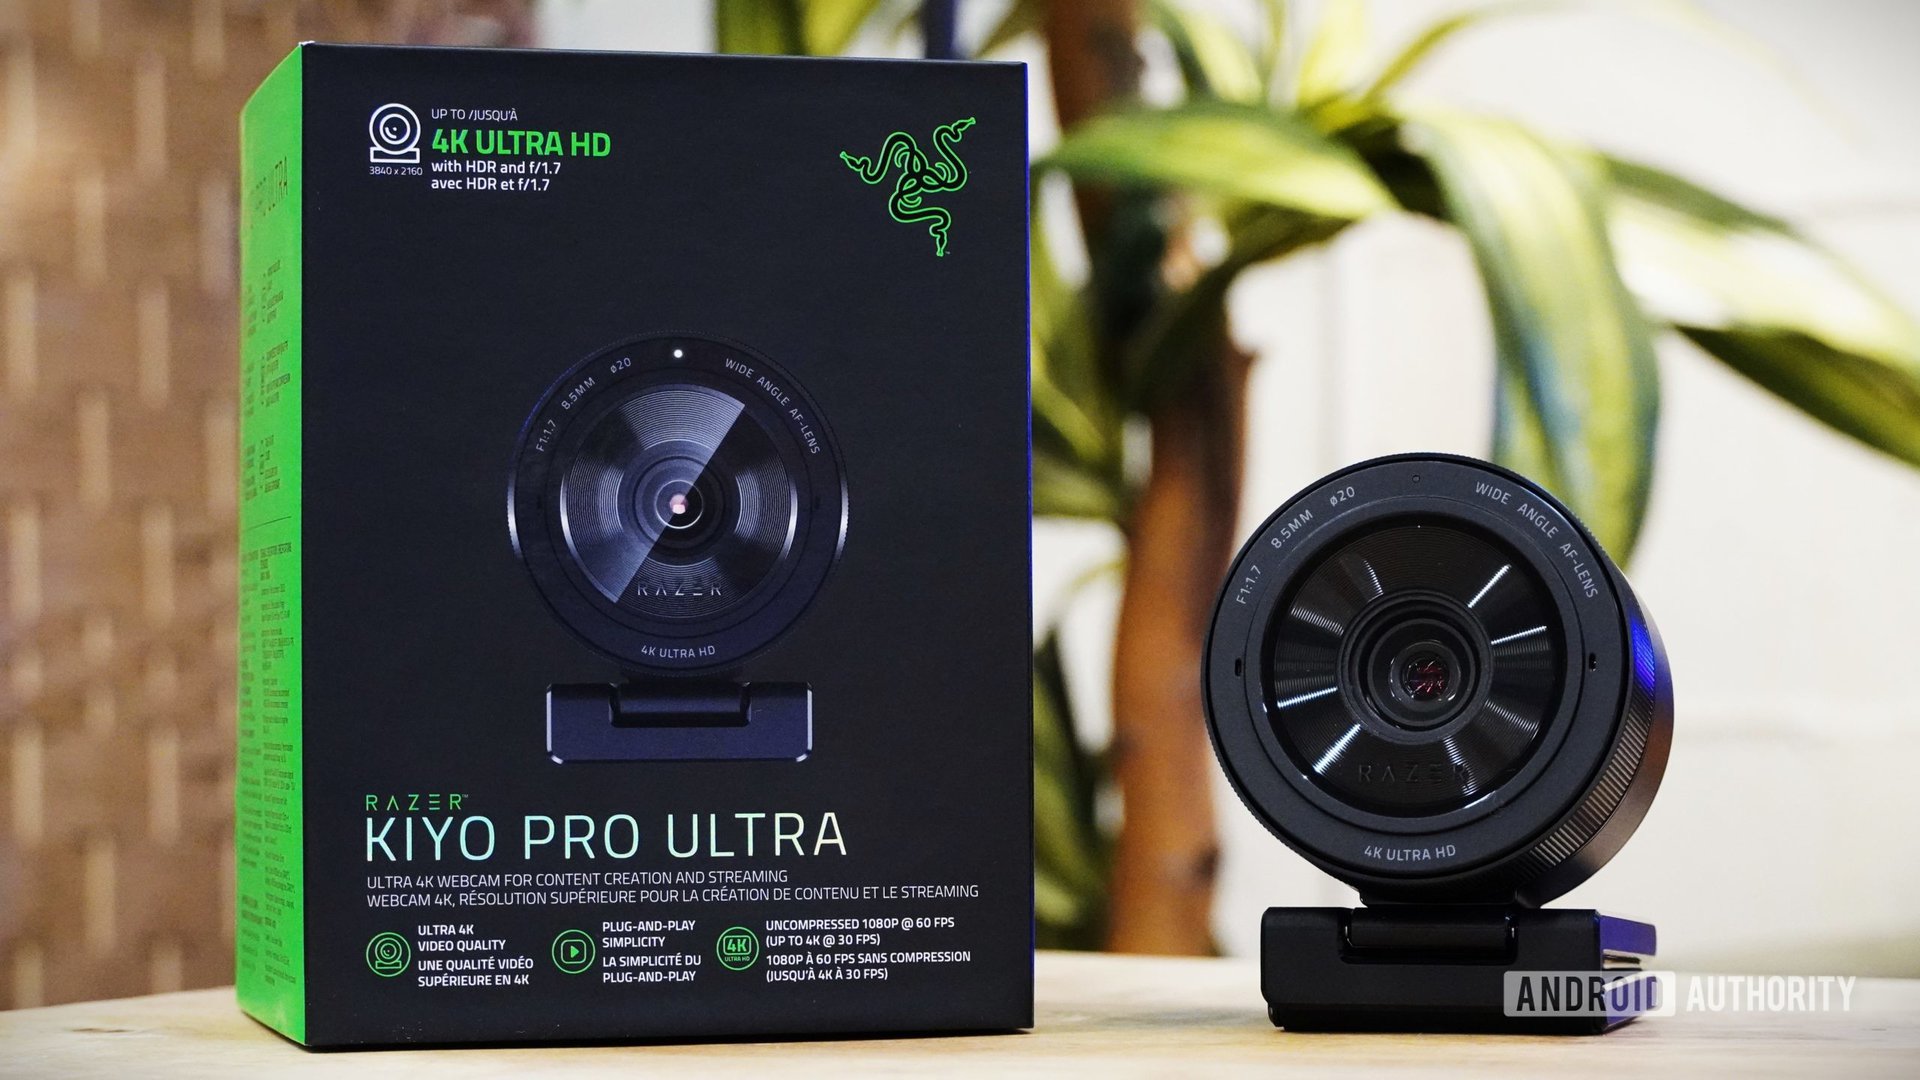 Razer Kiyo Pro Ultra is more like a DSLR than webcam